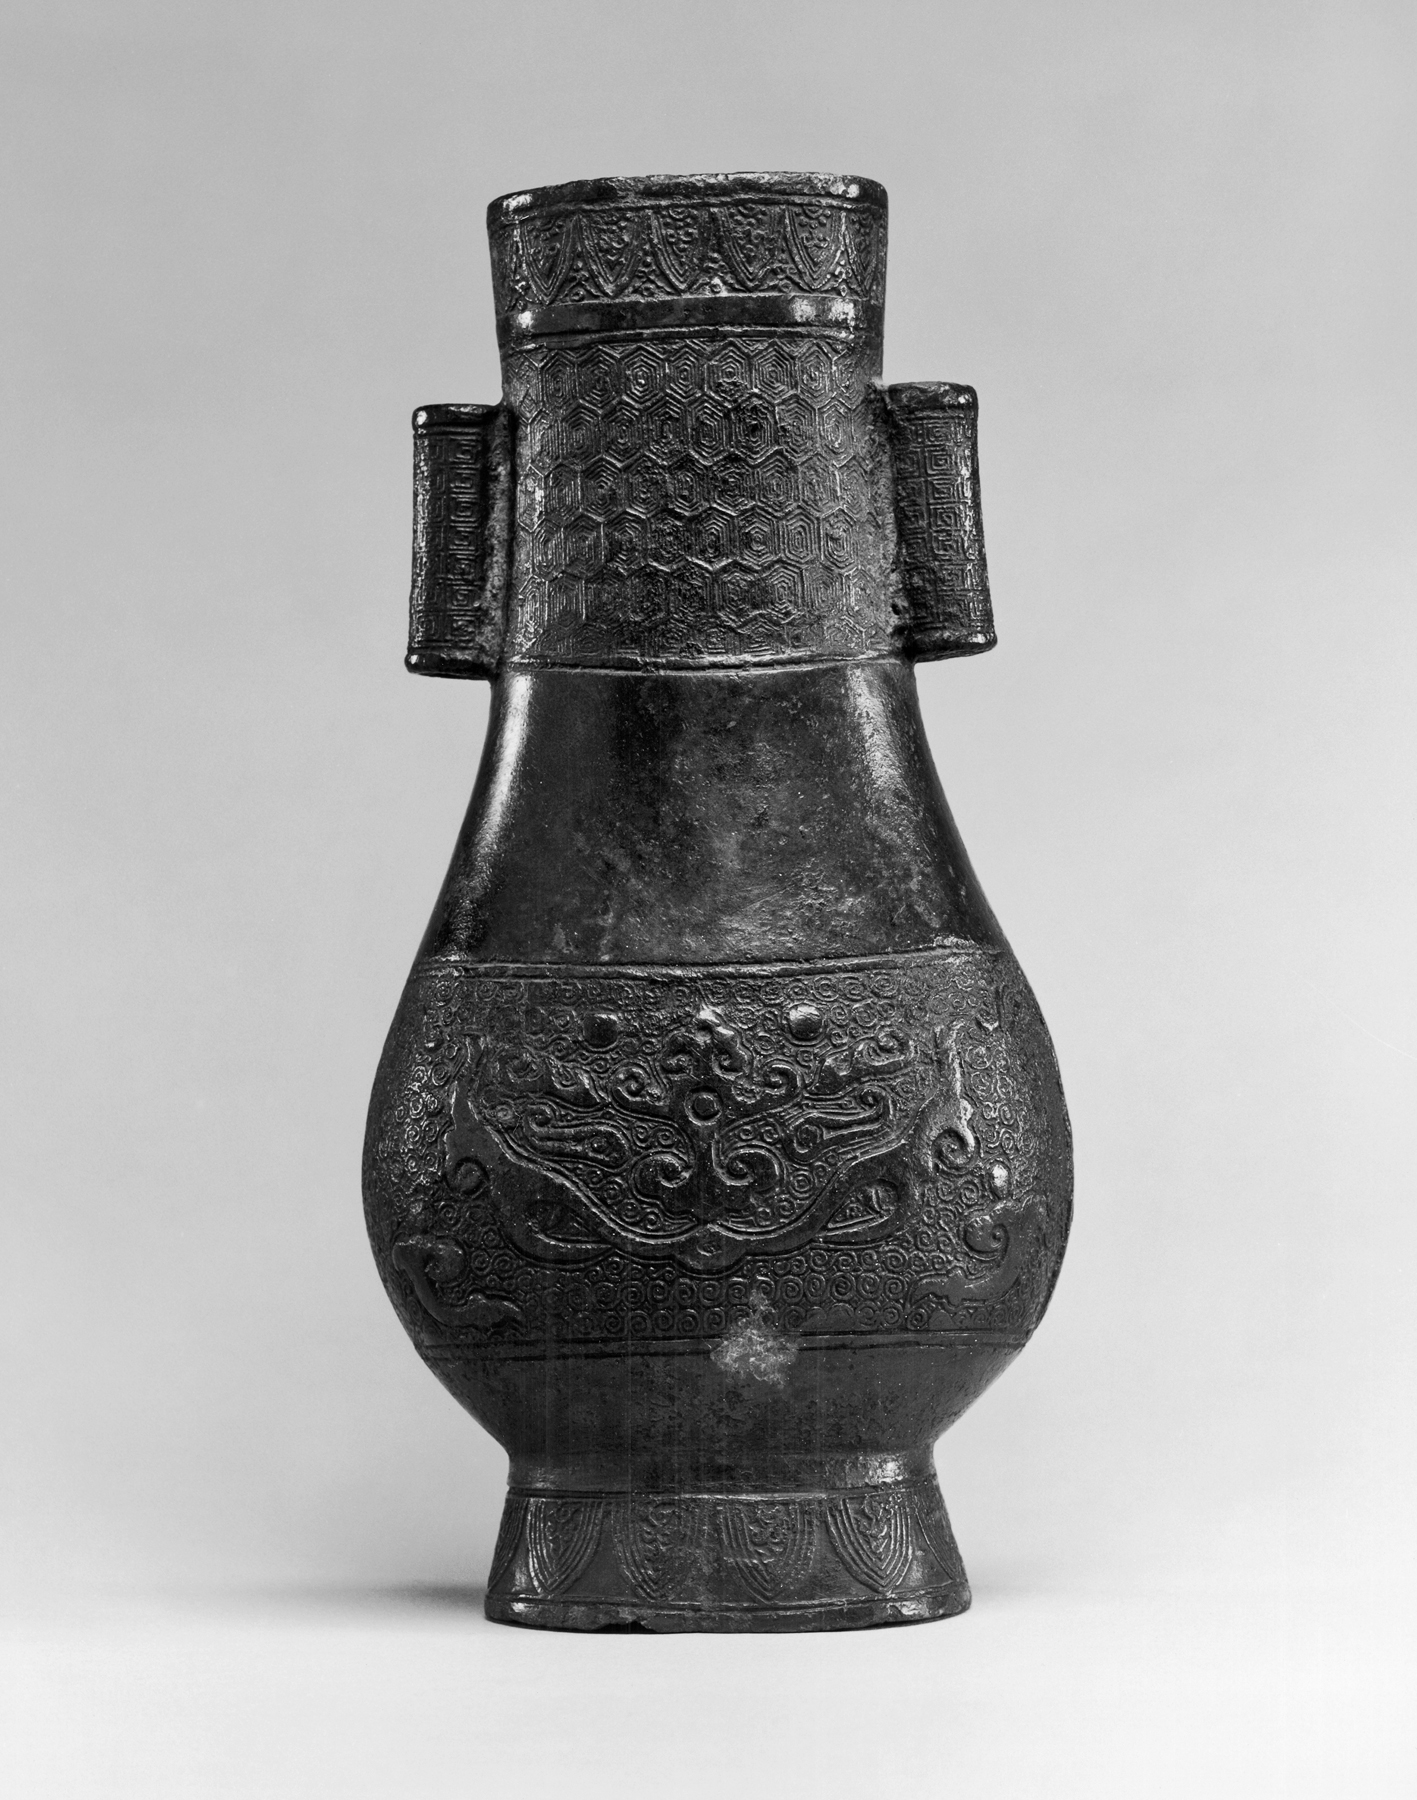 Christofle Chinese Style Vases